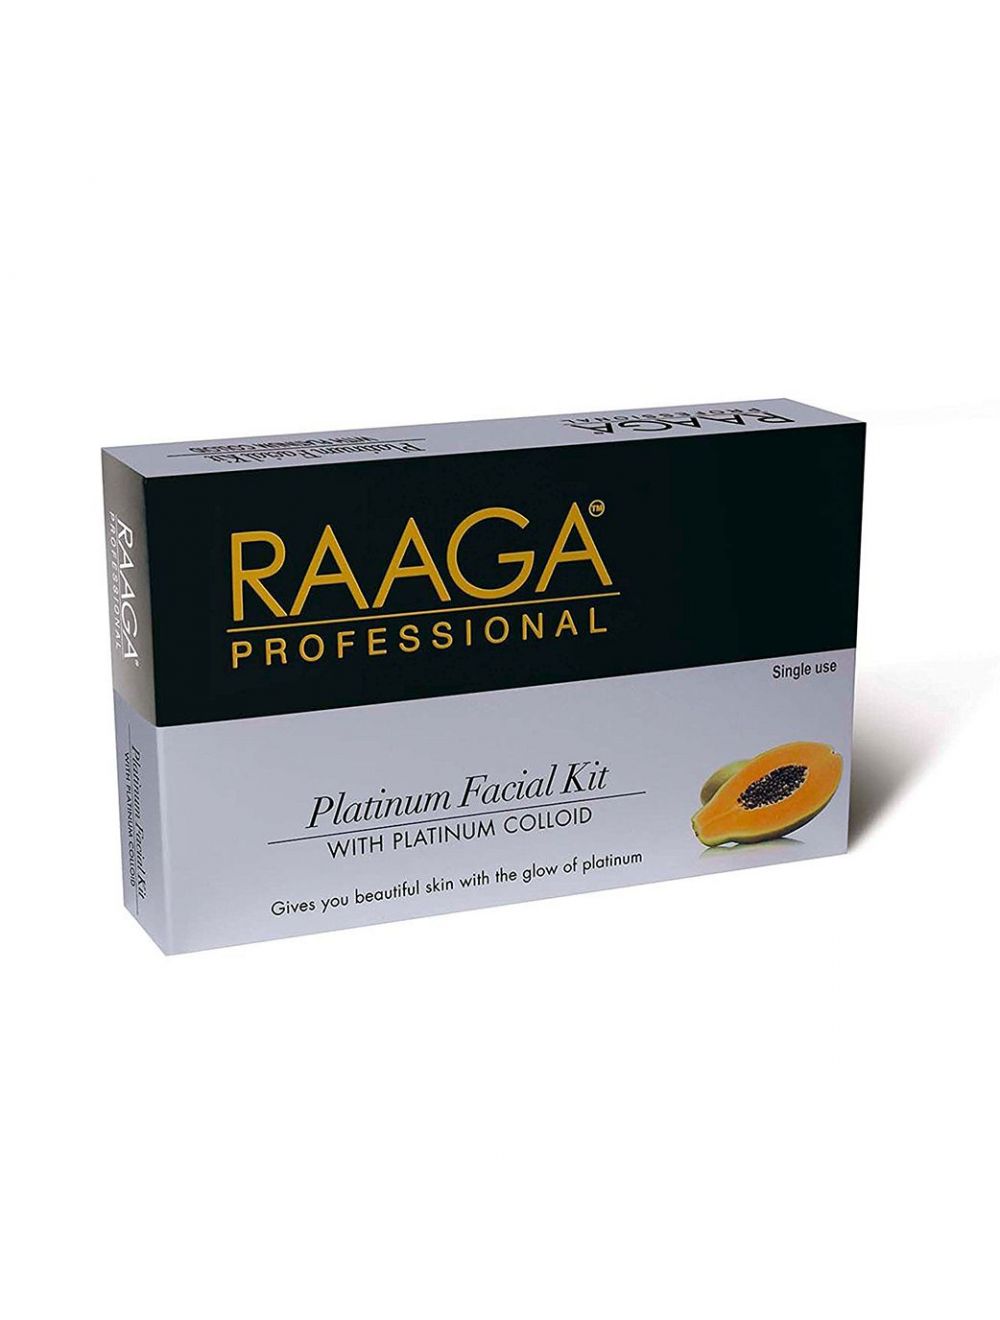 Raaga Professional Platinum Facial Kit With Platinum Colloid (43gm)